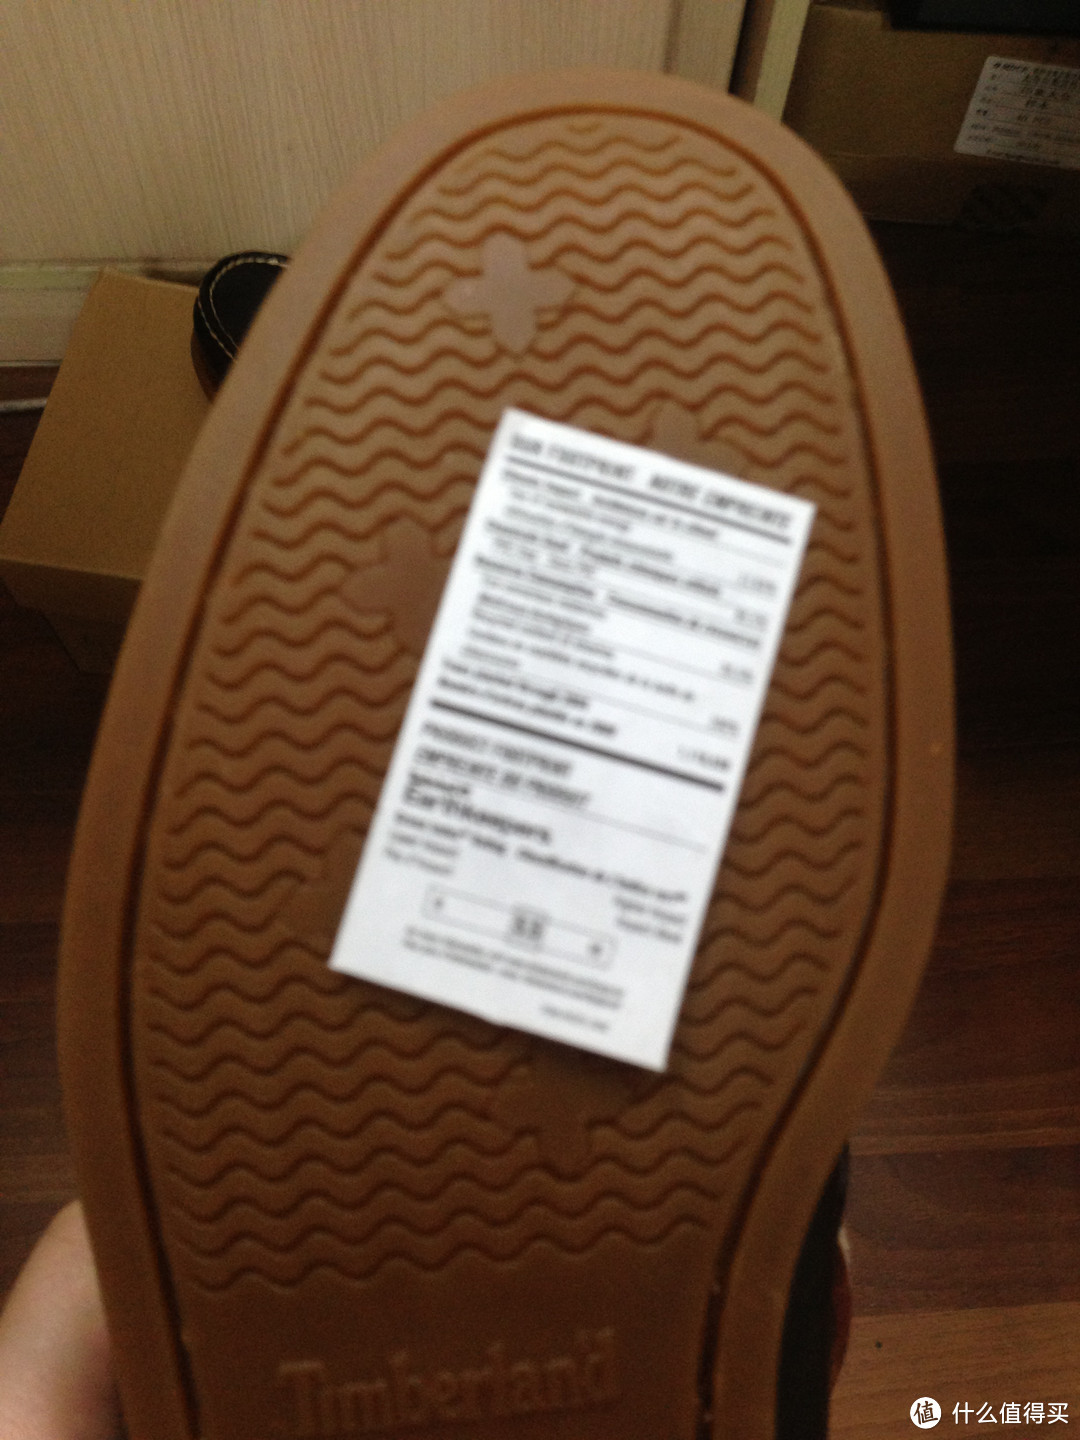 【9.26更新】Timberland  天木兰 男士经典船鞋 入手记 附送鞋带特殊系法